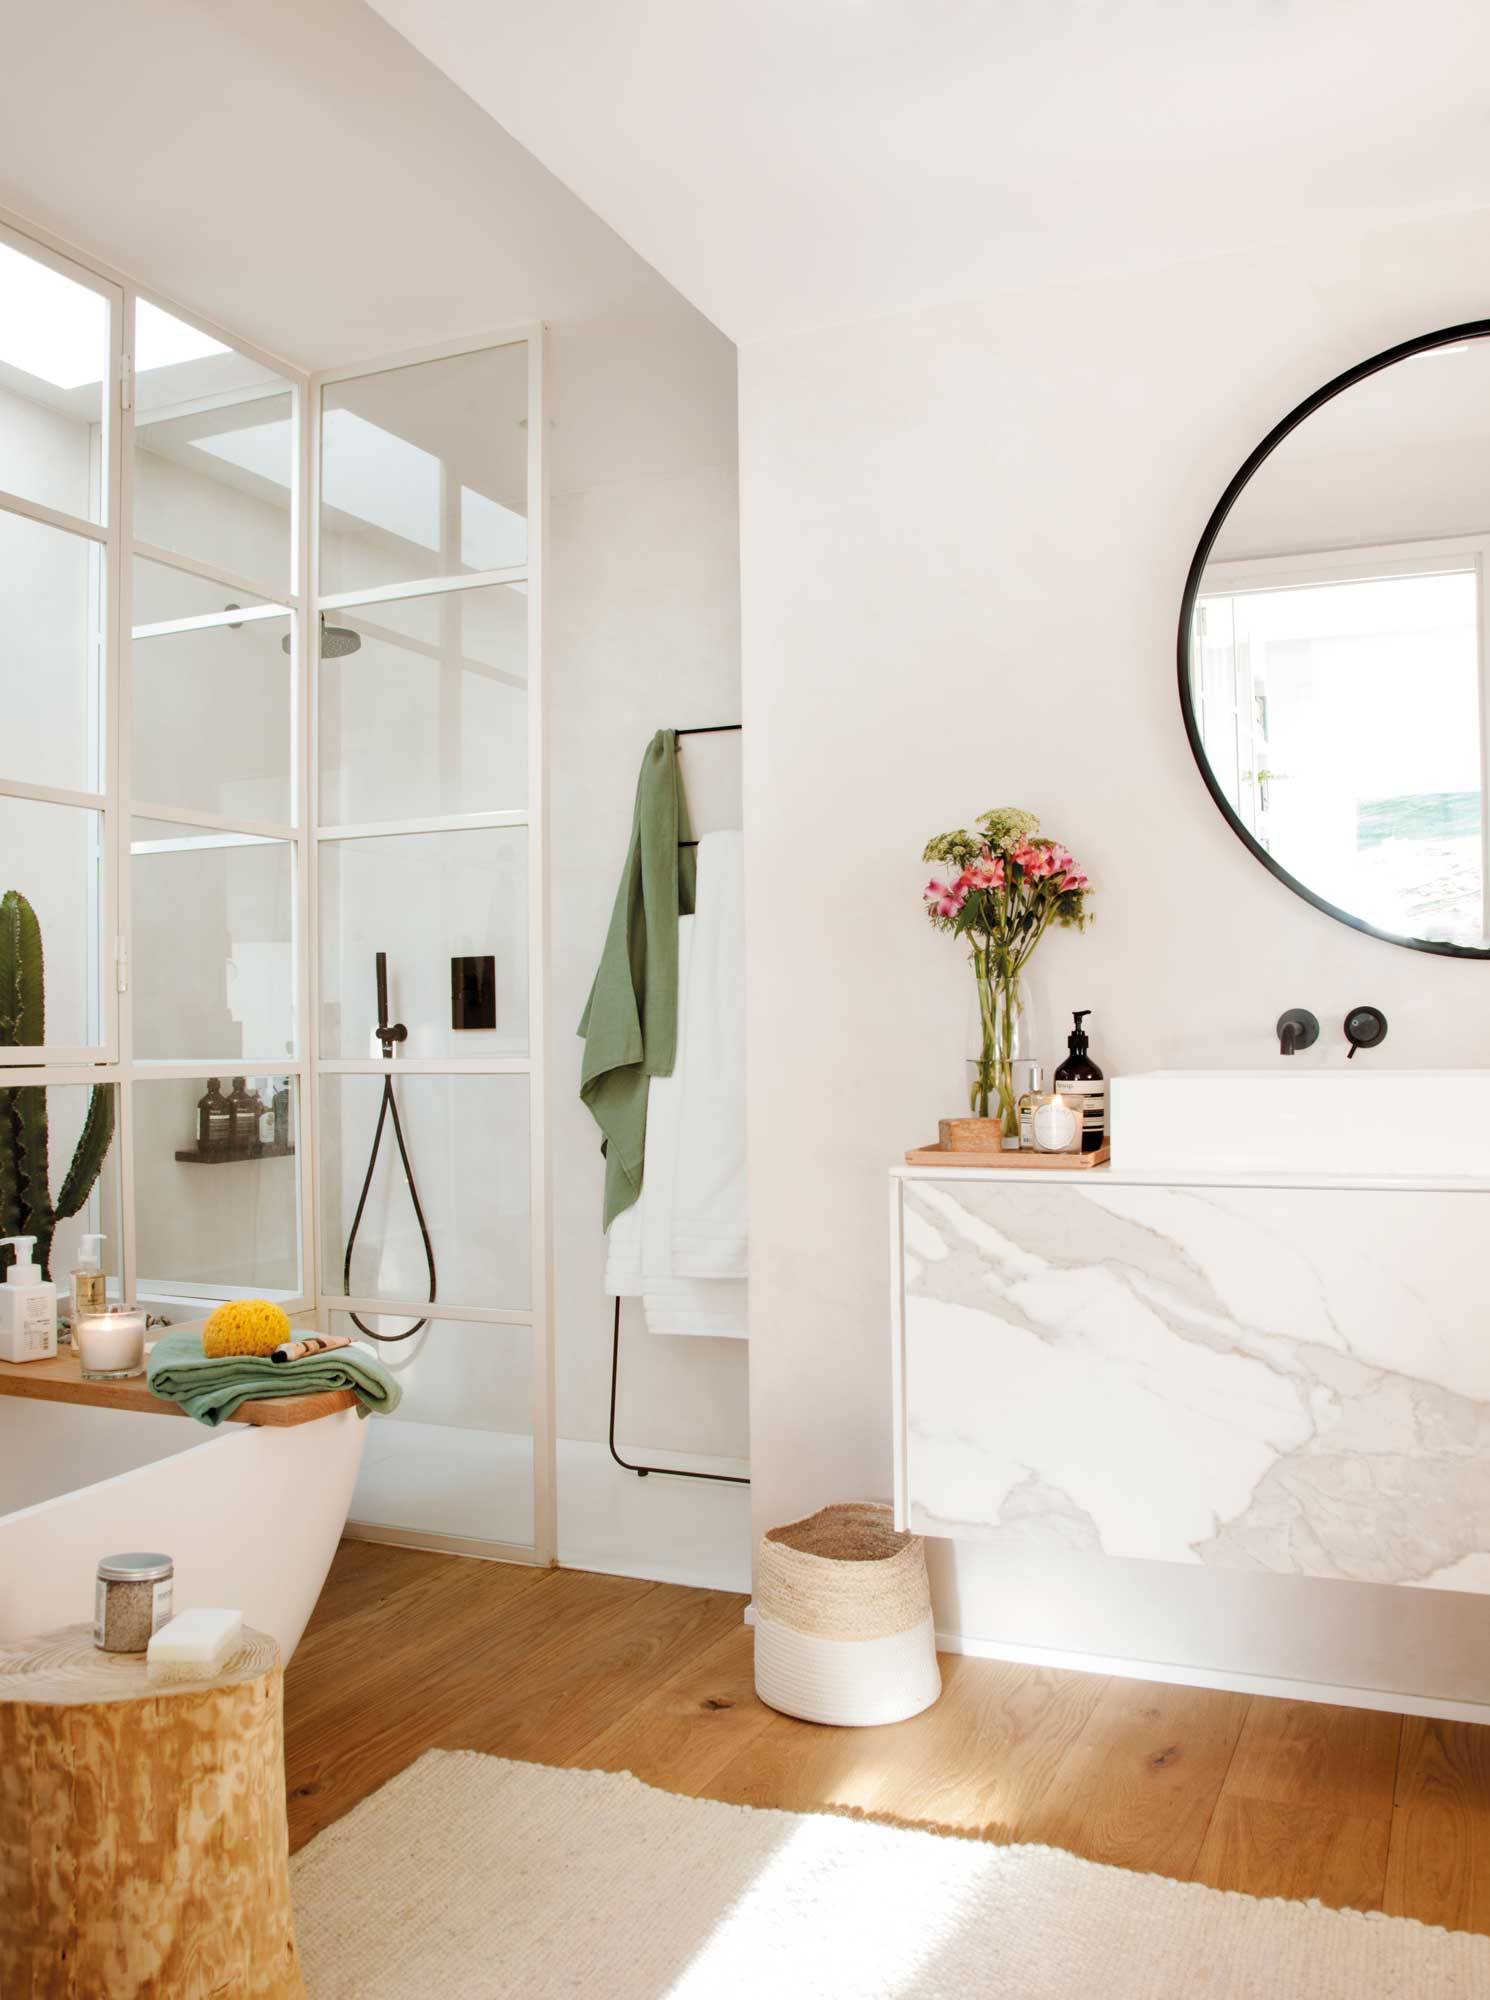 Baño moderno con ducha y bañera decorado en blanco, con el mueble bajo lavabo con el frente de mármol 00503771